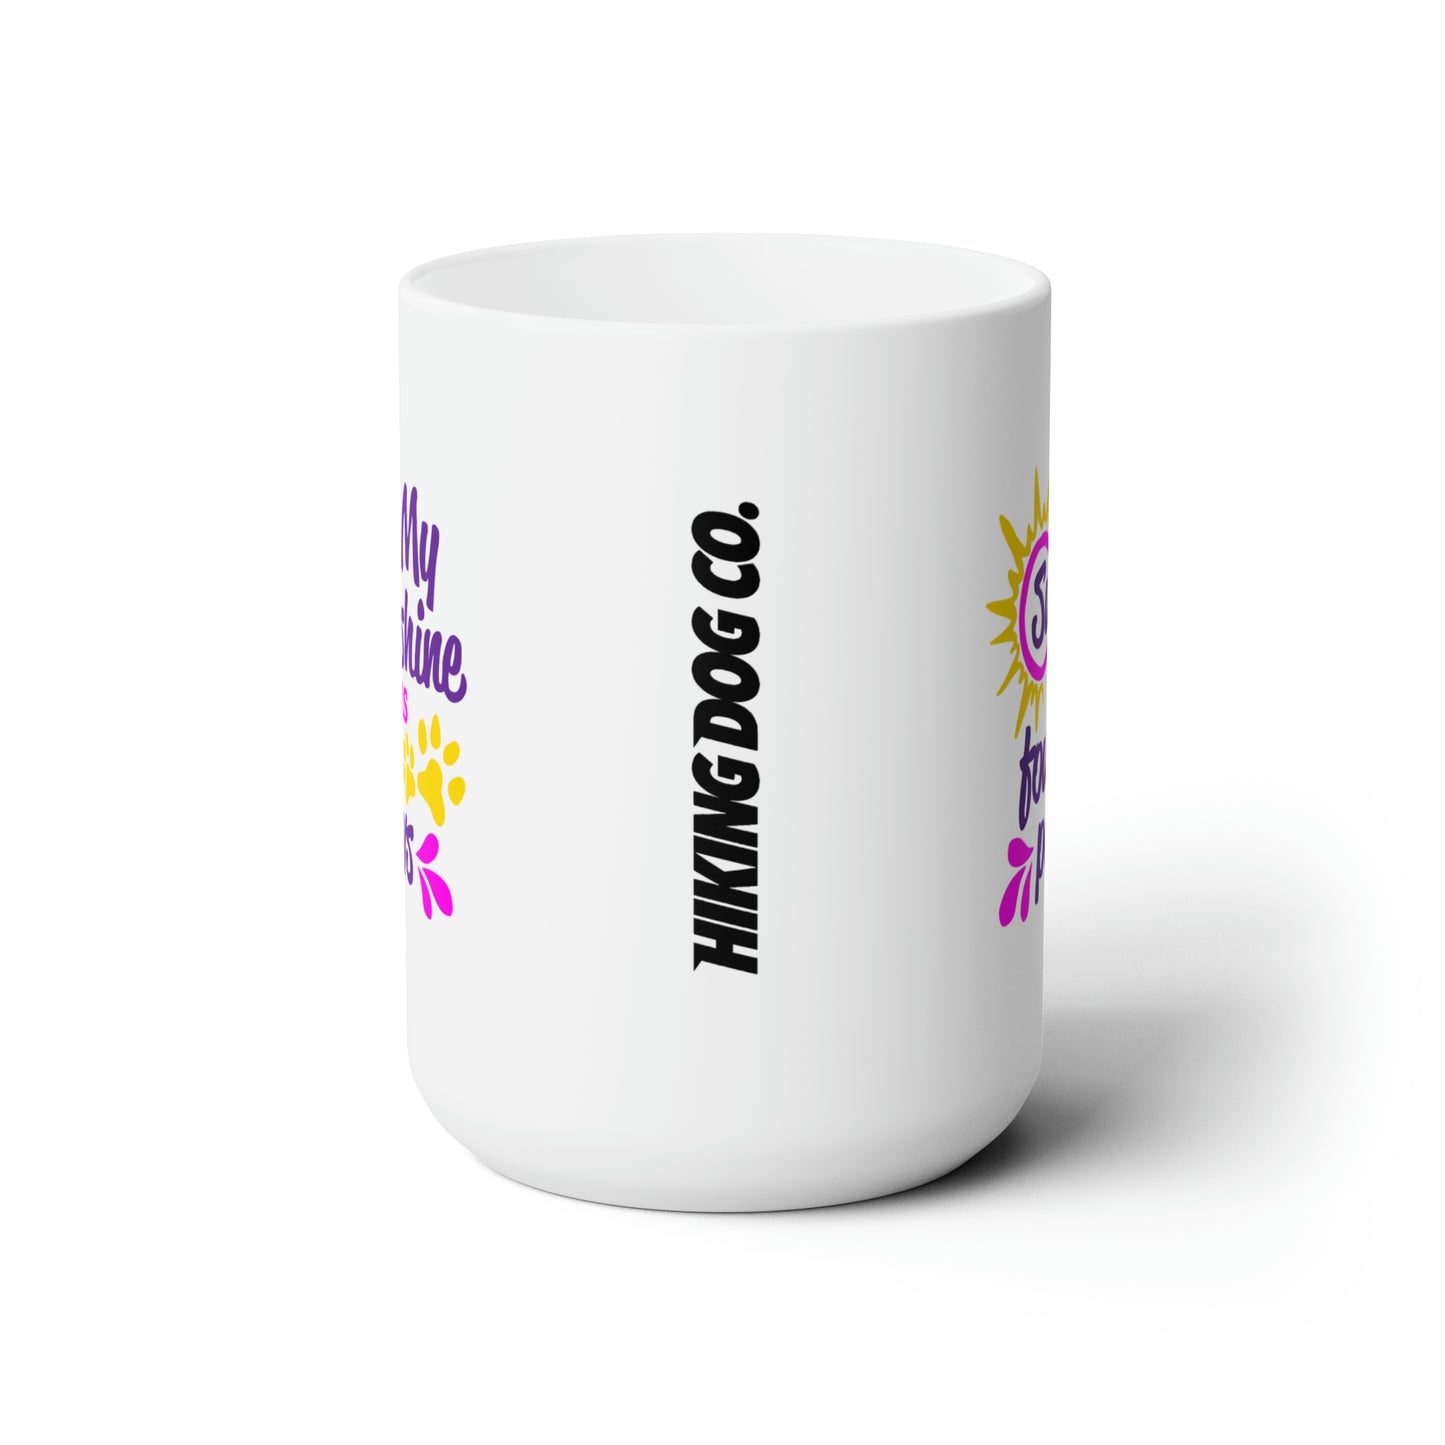 My Sunshine Ceramic Mug 15oz